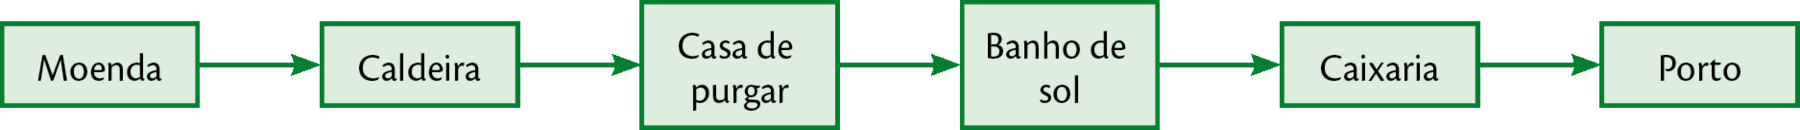 Esquema. Retângulos de borda verde ligados por setas verdes, alinhados em sequência. Cada um dos retângulos trás um texto, nessa ordem: Moenda; Caldeira; Casa de purgar; Banho de sol; Caixaria; Porto.